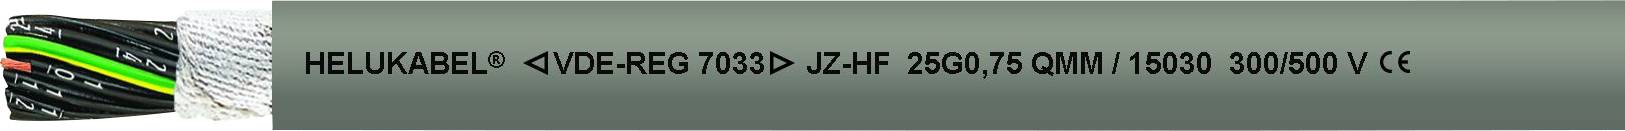 HELUKABEL 15061-1000 Schleppkettenleitung JZ-HF 12 G 1.50 mm² Grau 1000 m